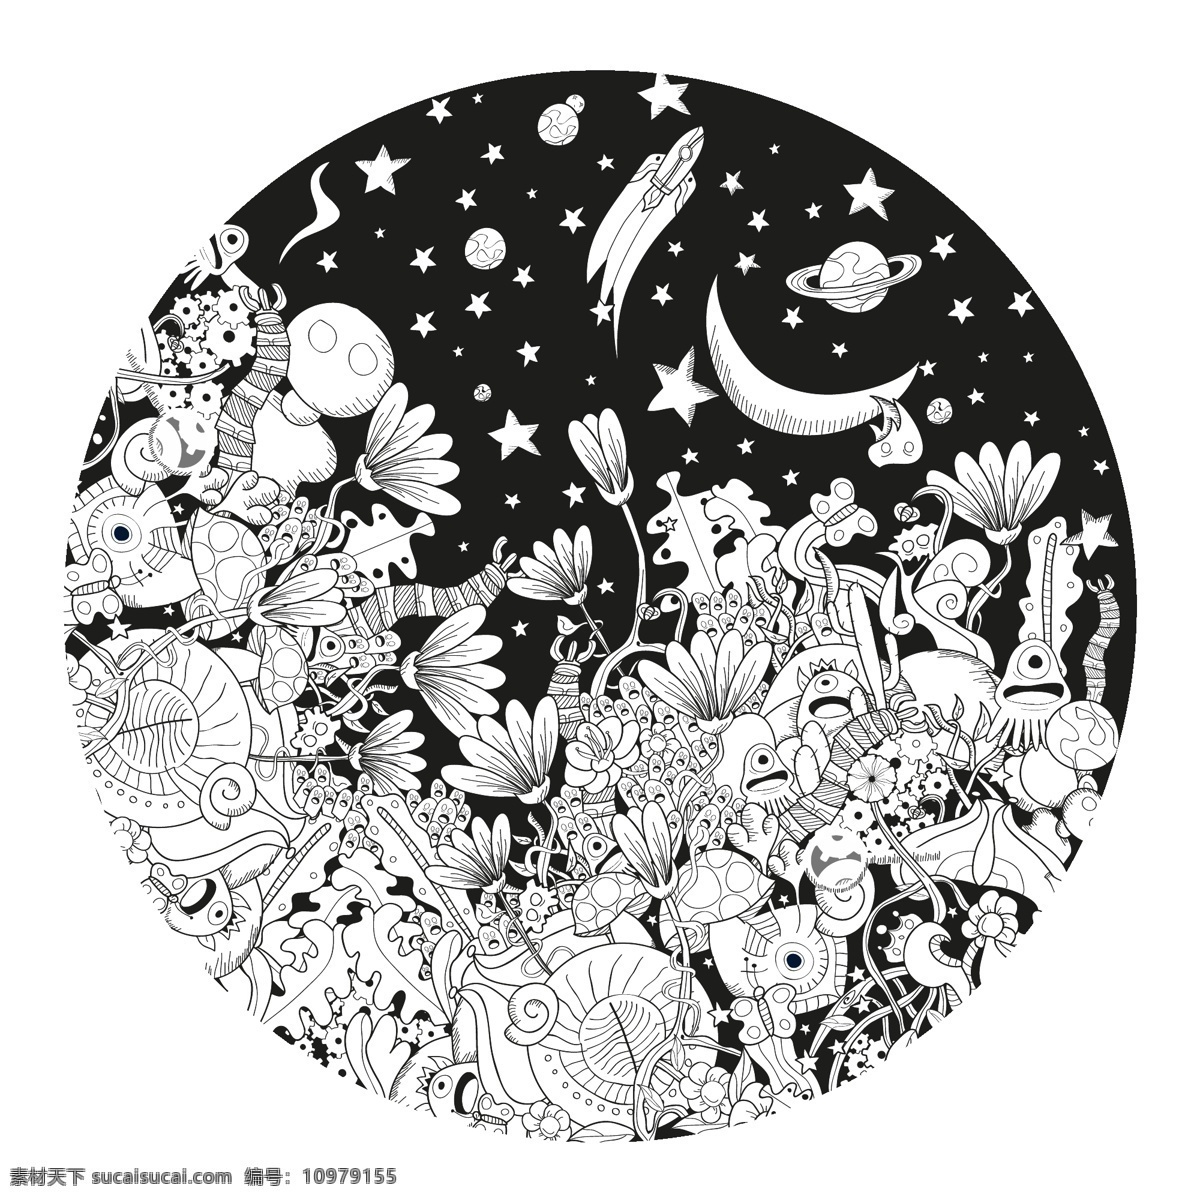 黑白 卡通 涂鸦 植物 插画 花朵 星星 艺术